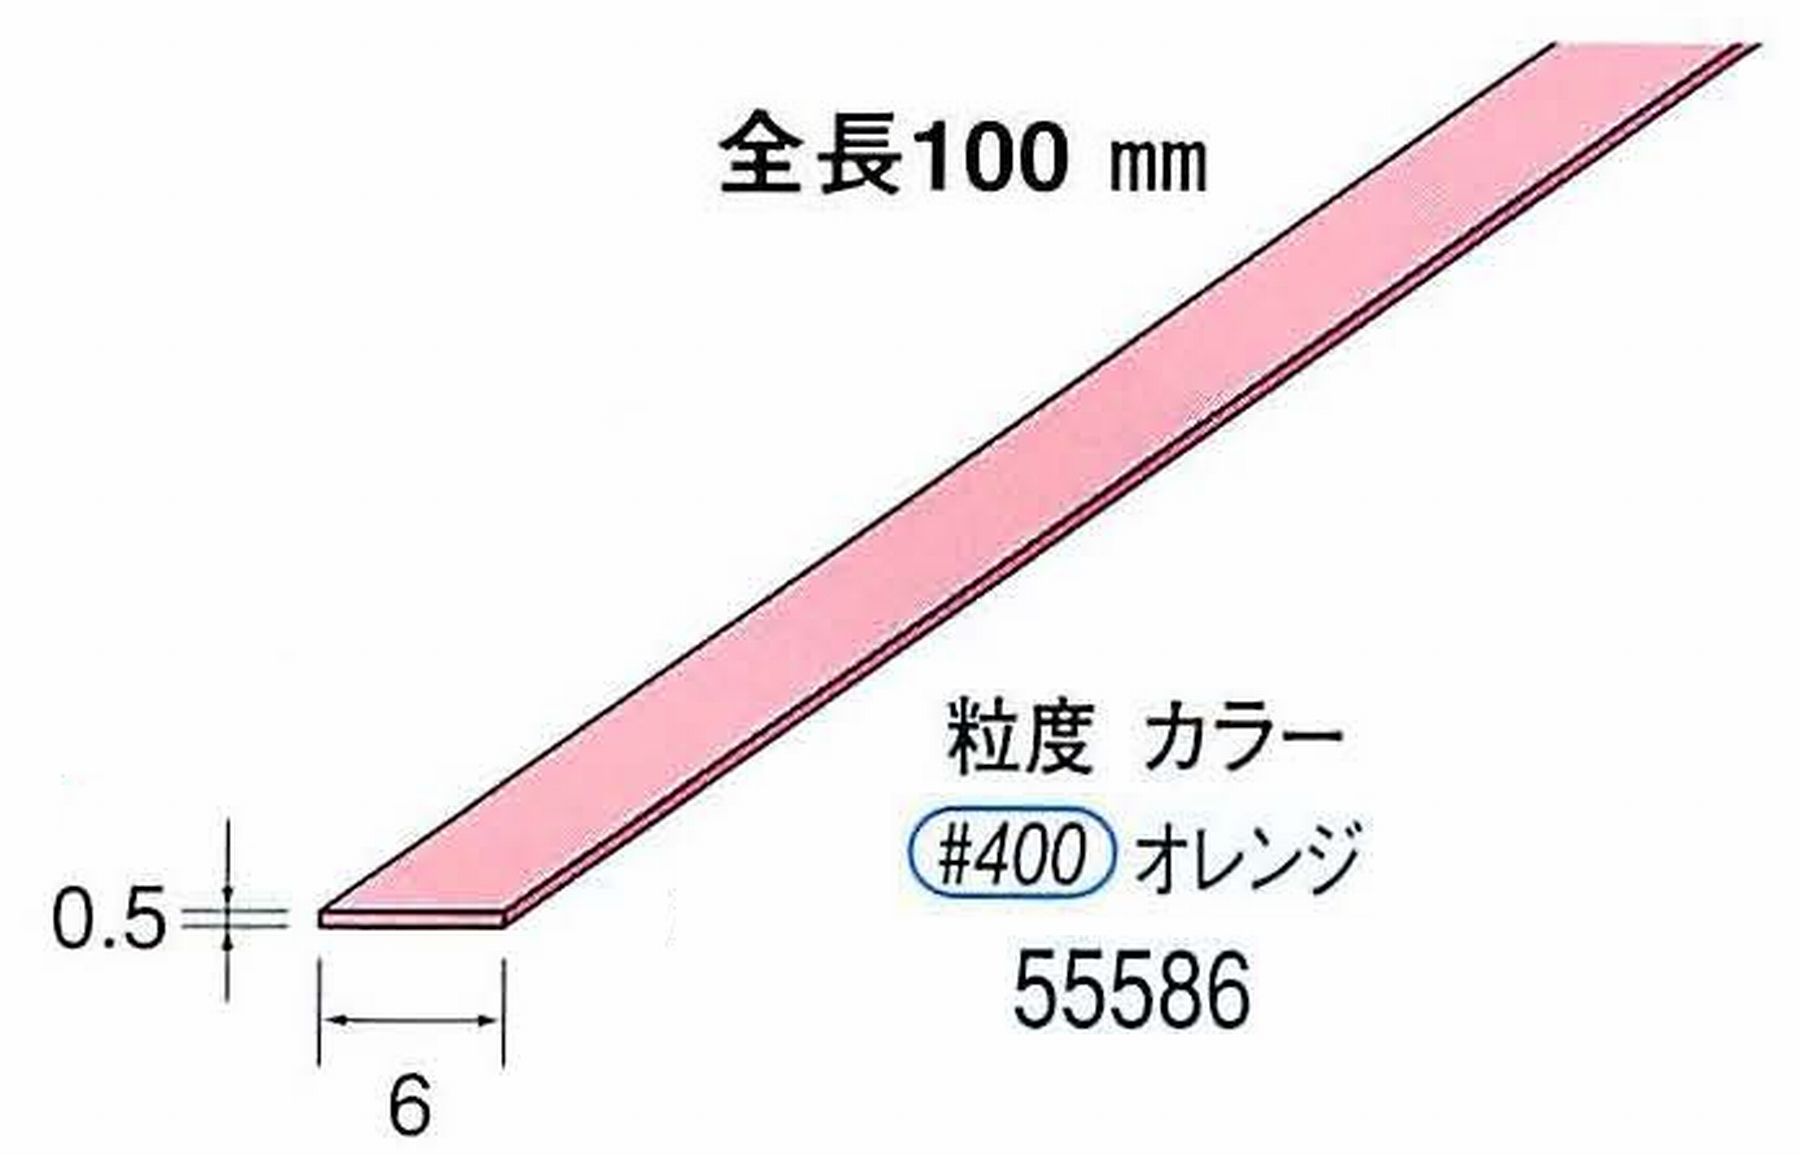 ナカニシ/NAKANISHI セラファイバー砥石 全長100mm オレンジ 55586